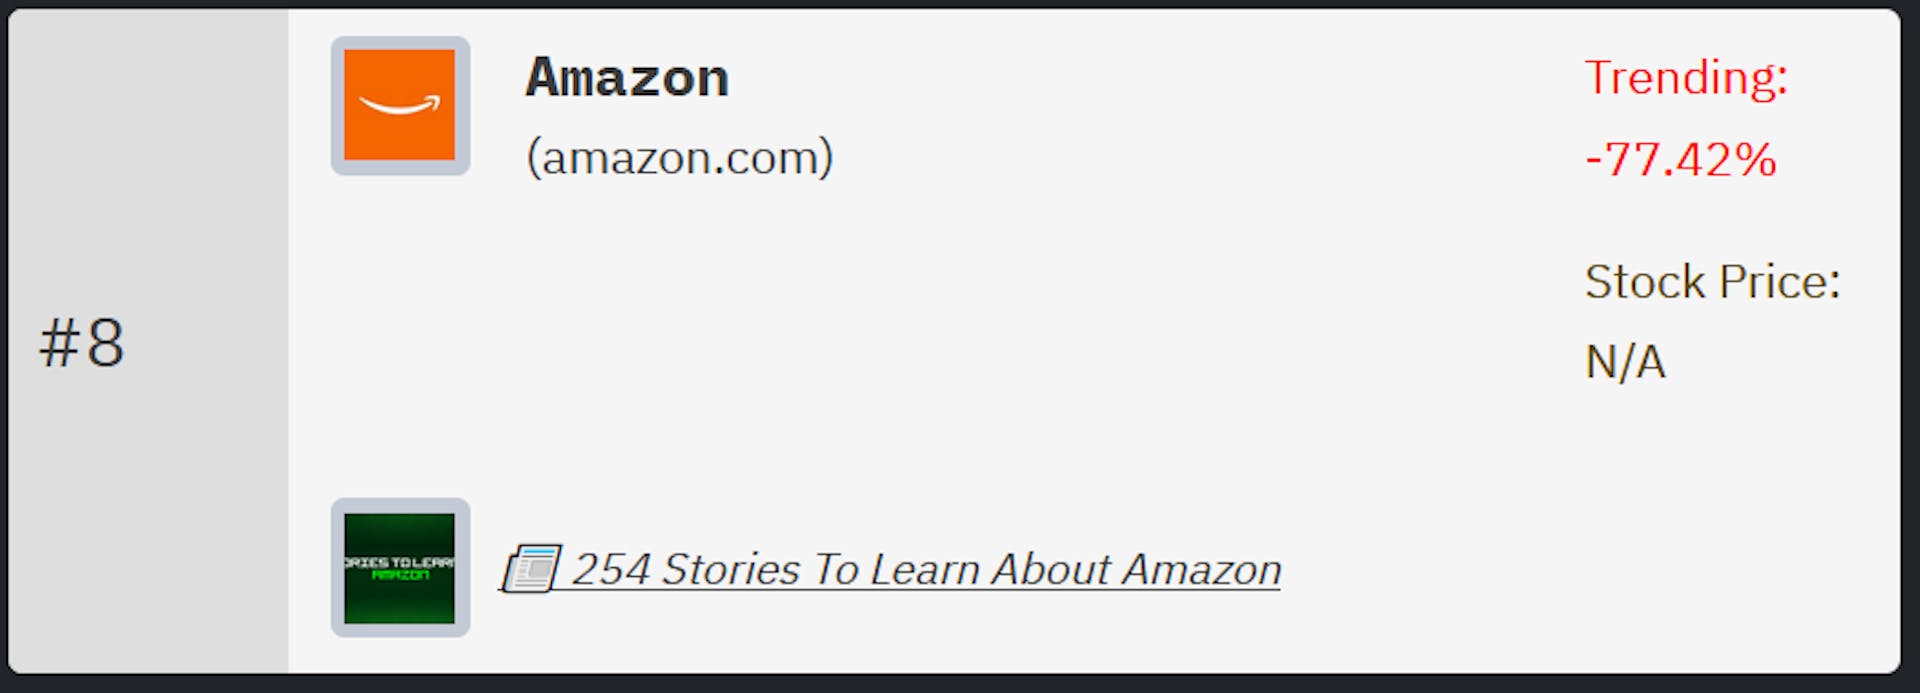 Classificação da Amazon no ranking de empresas de tecnologia da HackerNoon